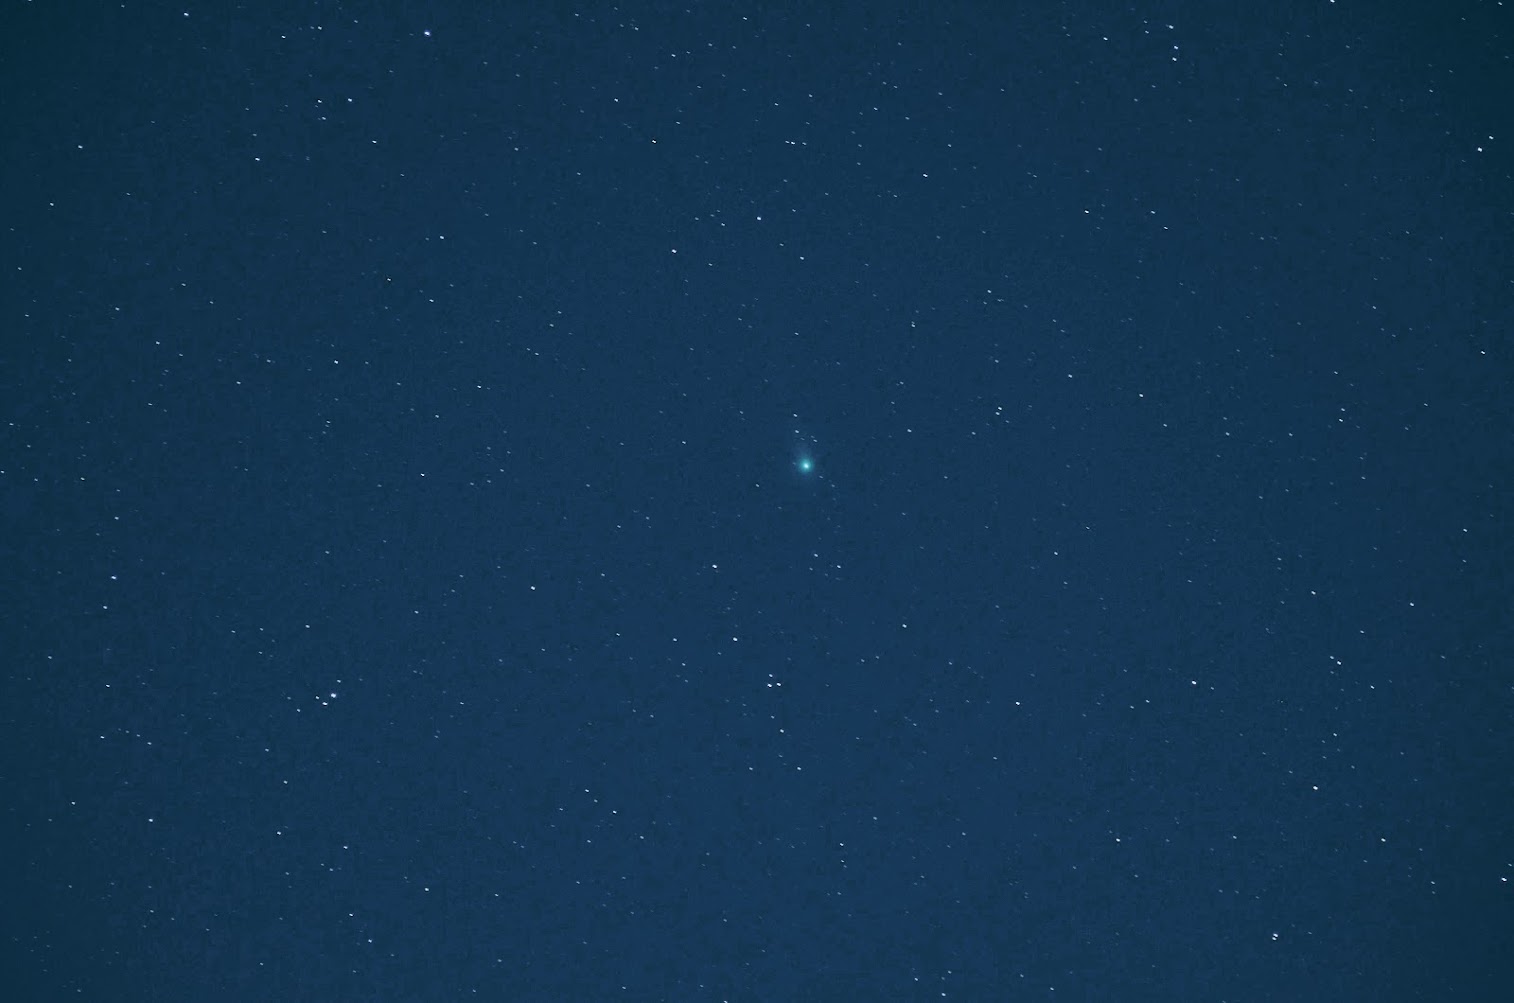 Comet Lovejoy (C/2013 R1) on November 21, 2013